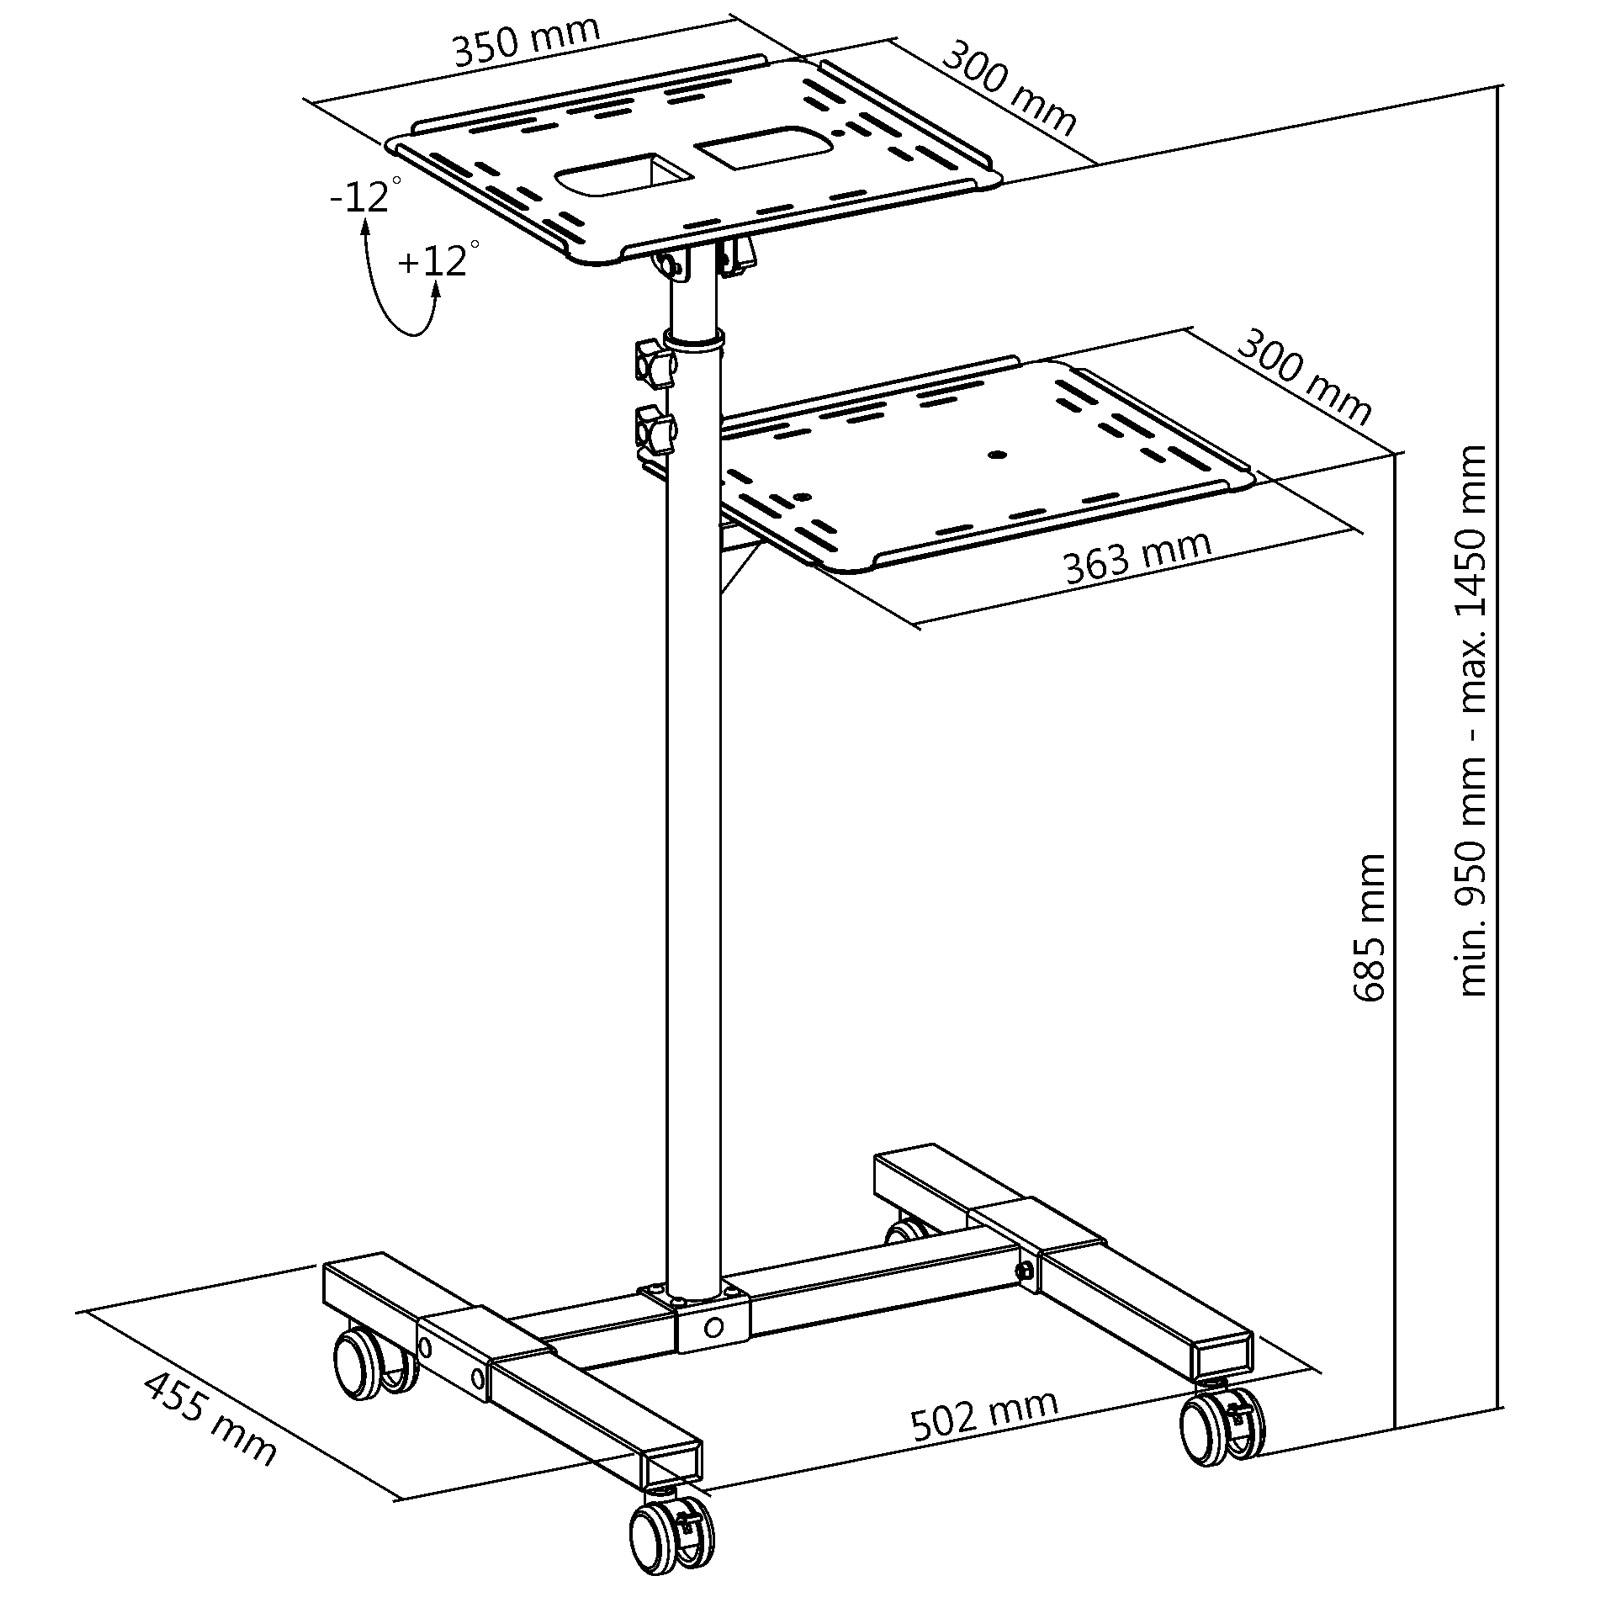 DRALL INSTRUMENTS Beamer- und für Rollbarer höhenverstellbar - neigbar Laptop mit LB9 Projektorwagen für Projektor Modell: Beamer Overhead-Projektortisch - Laptop Beamer Ablage